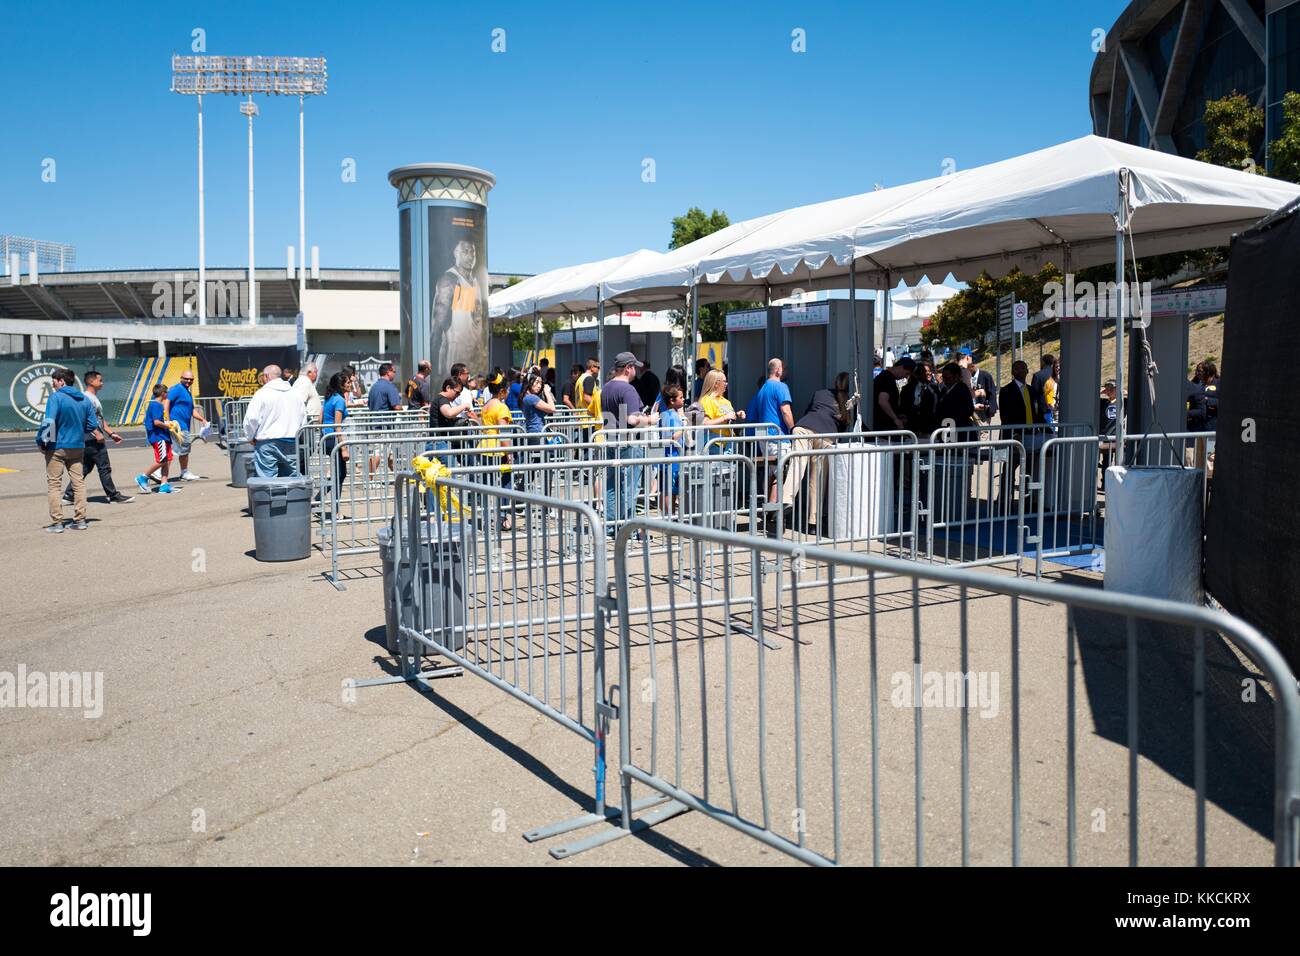 Prima delle finali del gioco 2 della National Basketball Association (NBA) tra i Golden state Warriors e i Cleveland Cavaliers, i fan entrano nei metal detector fuori della Oracle Arena di Oakland, California, il 5 giugno 2016. Foto Stock